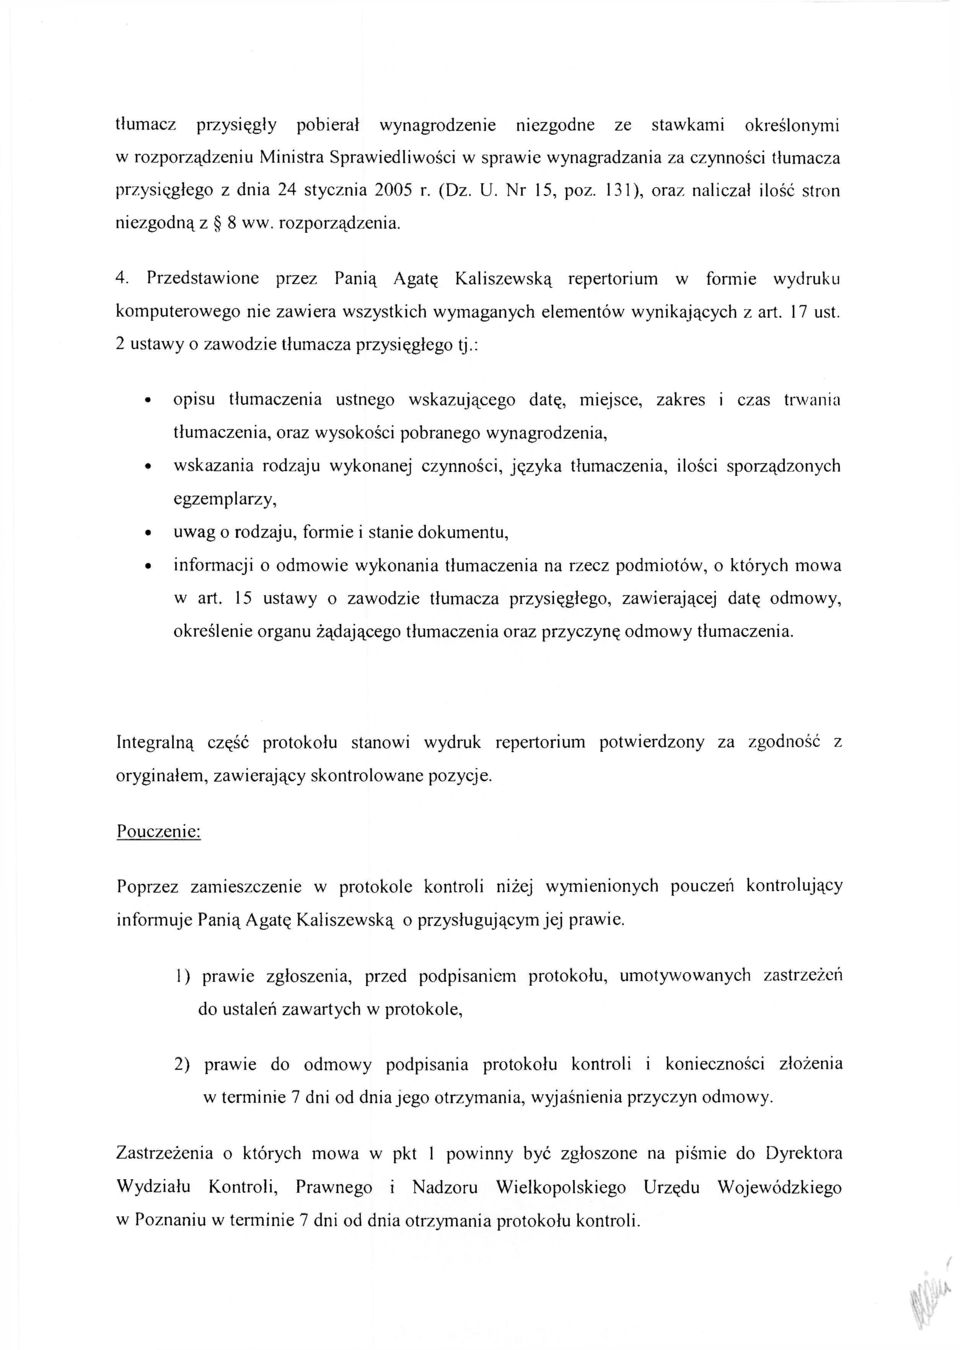 Przedstawione przez Panią Agatę Kaliszewską repertorium w formie wydruku komputerowego nie zawiera wszystkich wymaganych elementów wynikających z art. 17 ust.